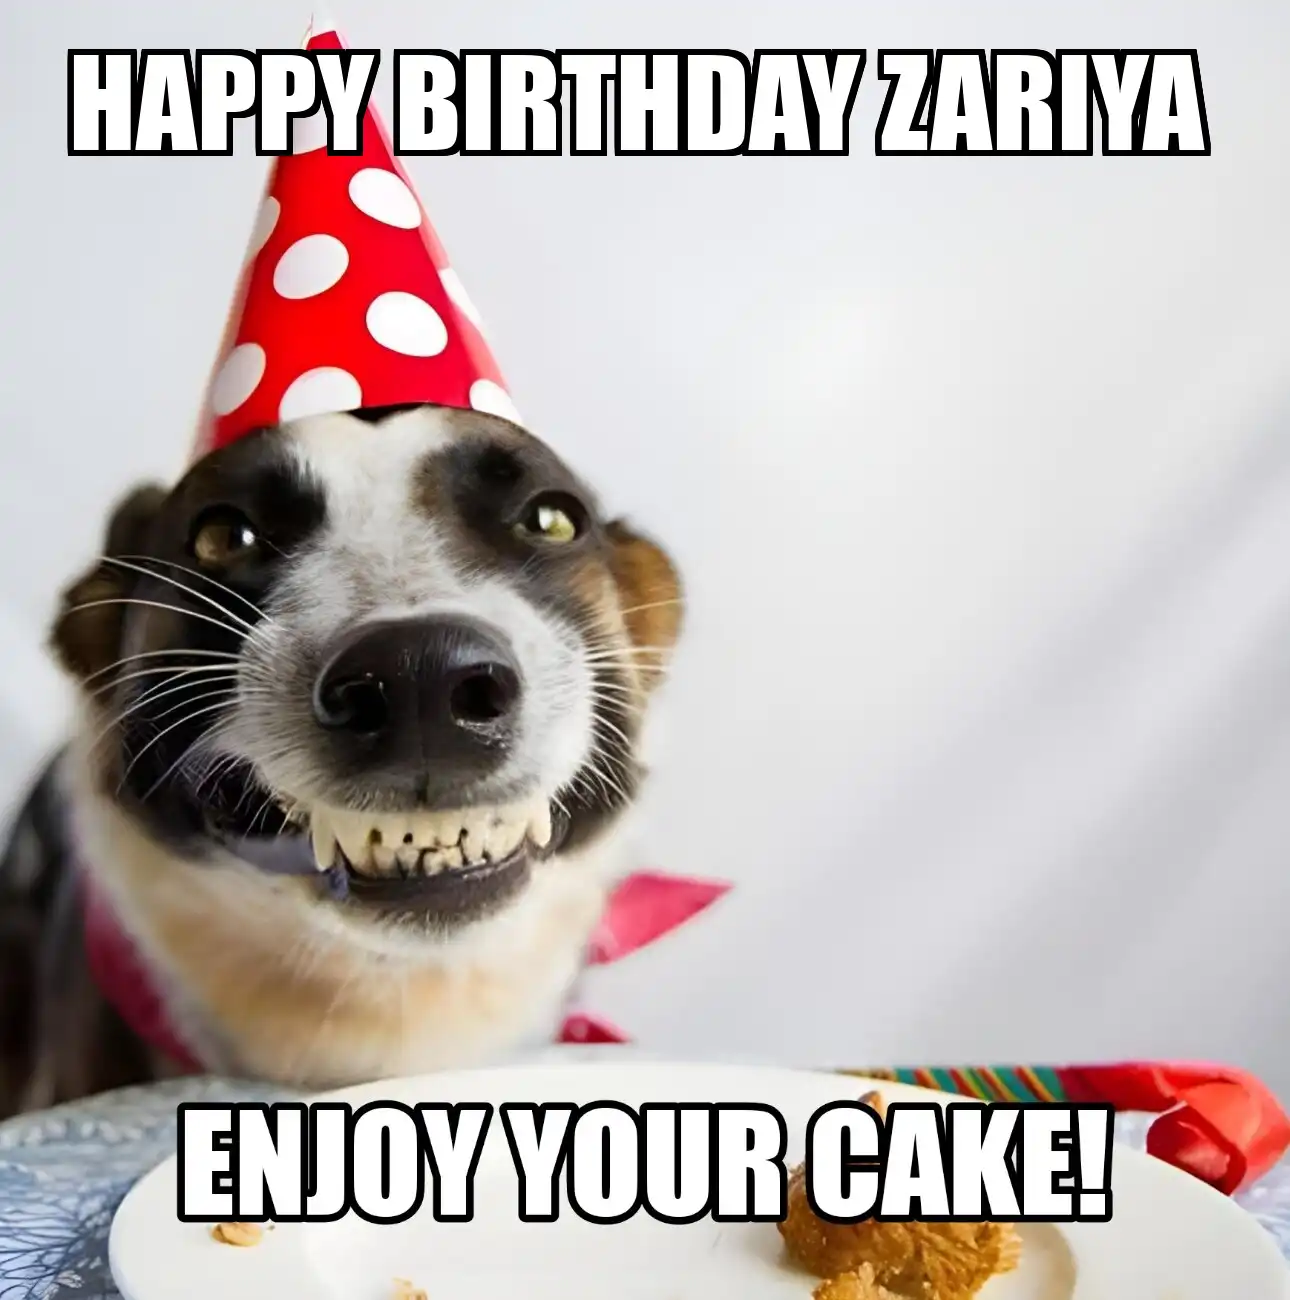 Happy Birthday Zariya Enjoy Your Cake Dog Meme